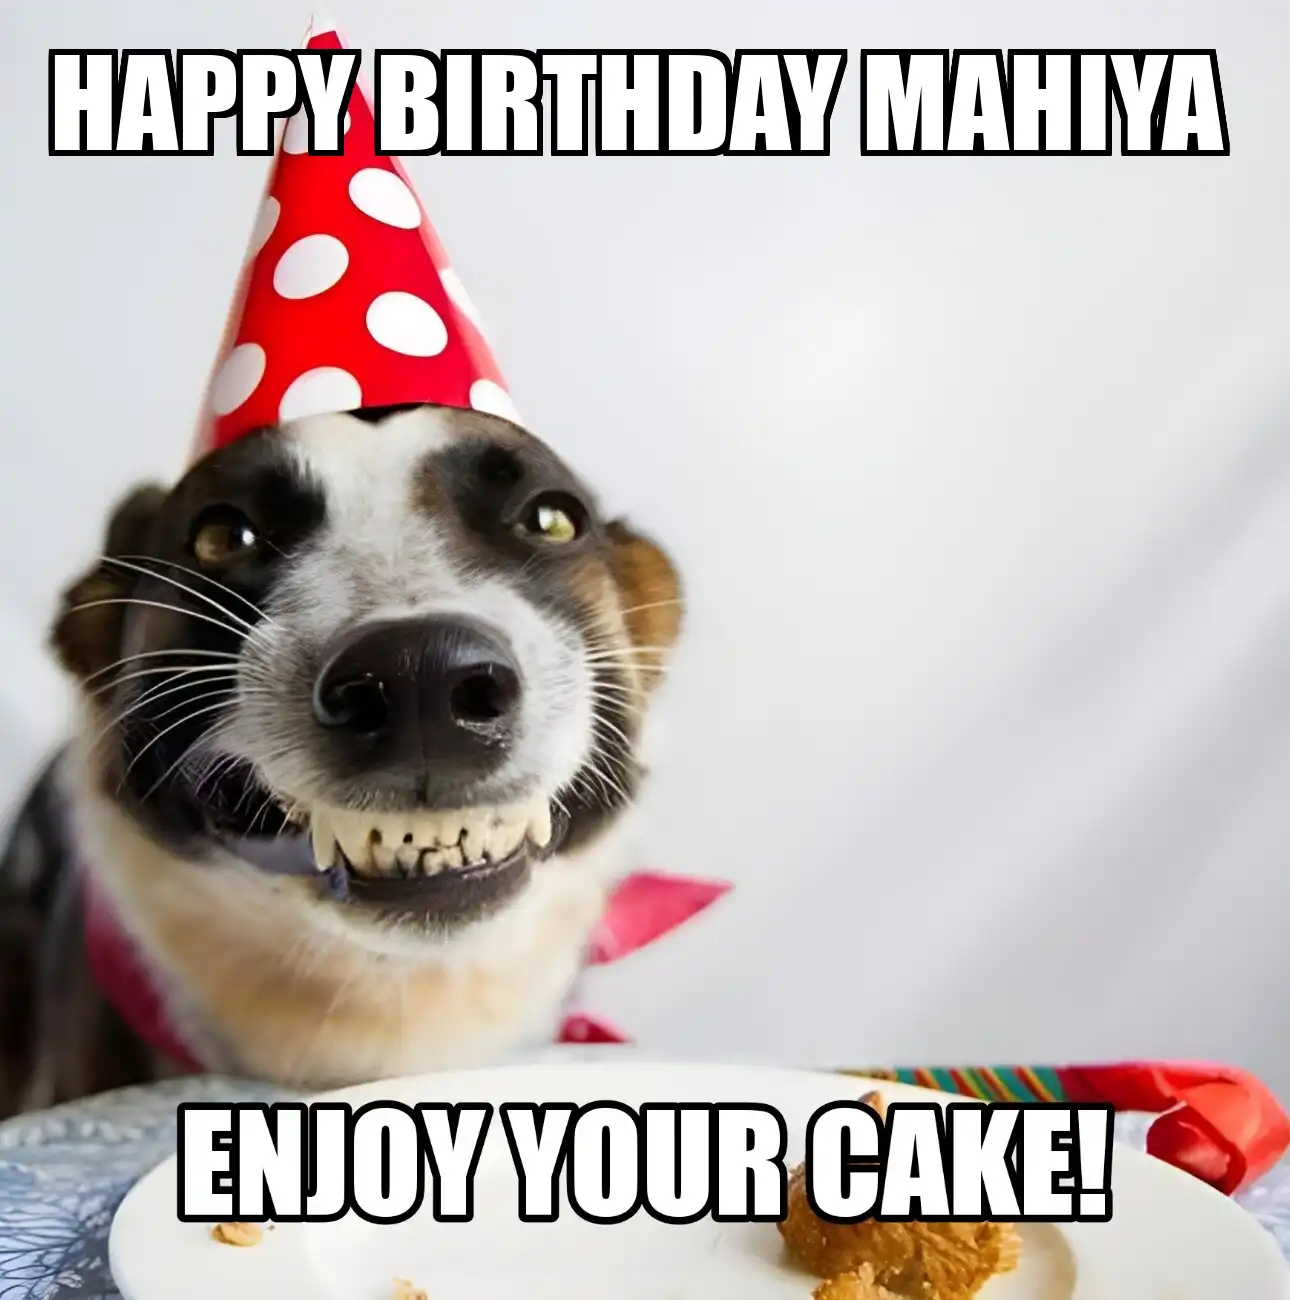 Happy Birthday Mahiya Enjoy Your Cake Dog Meme